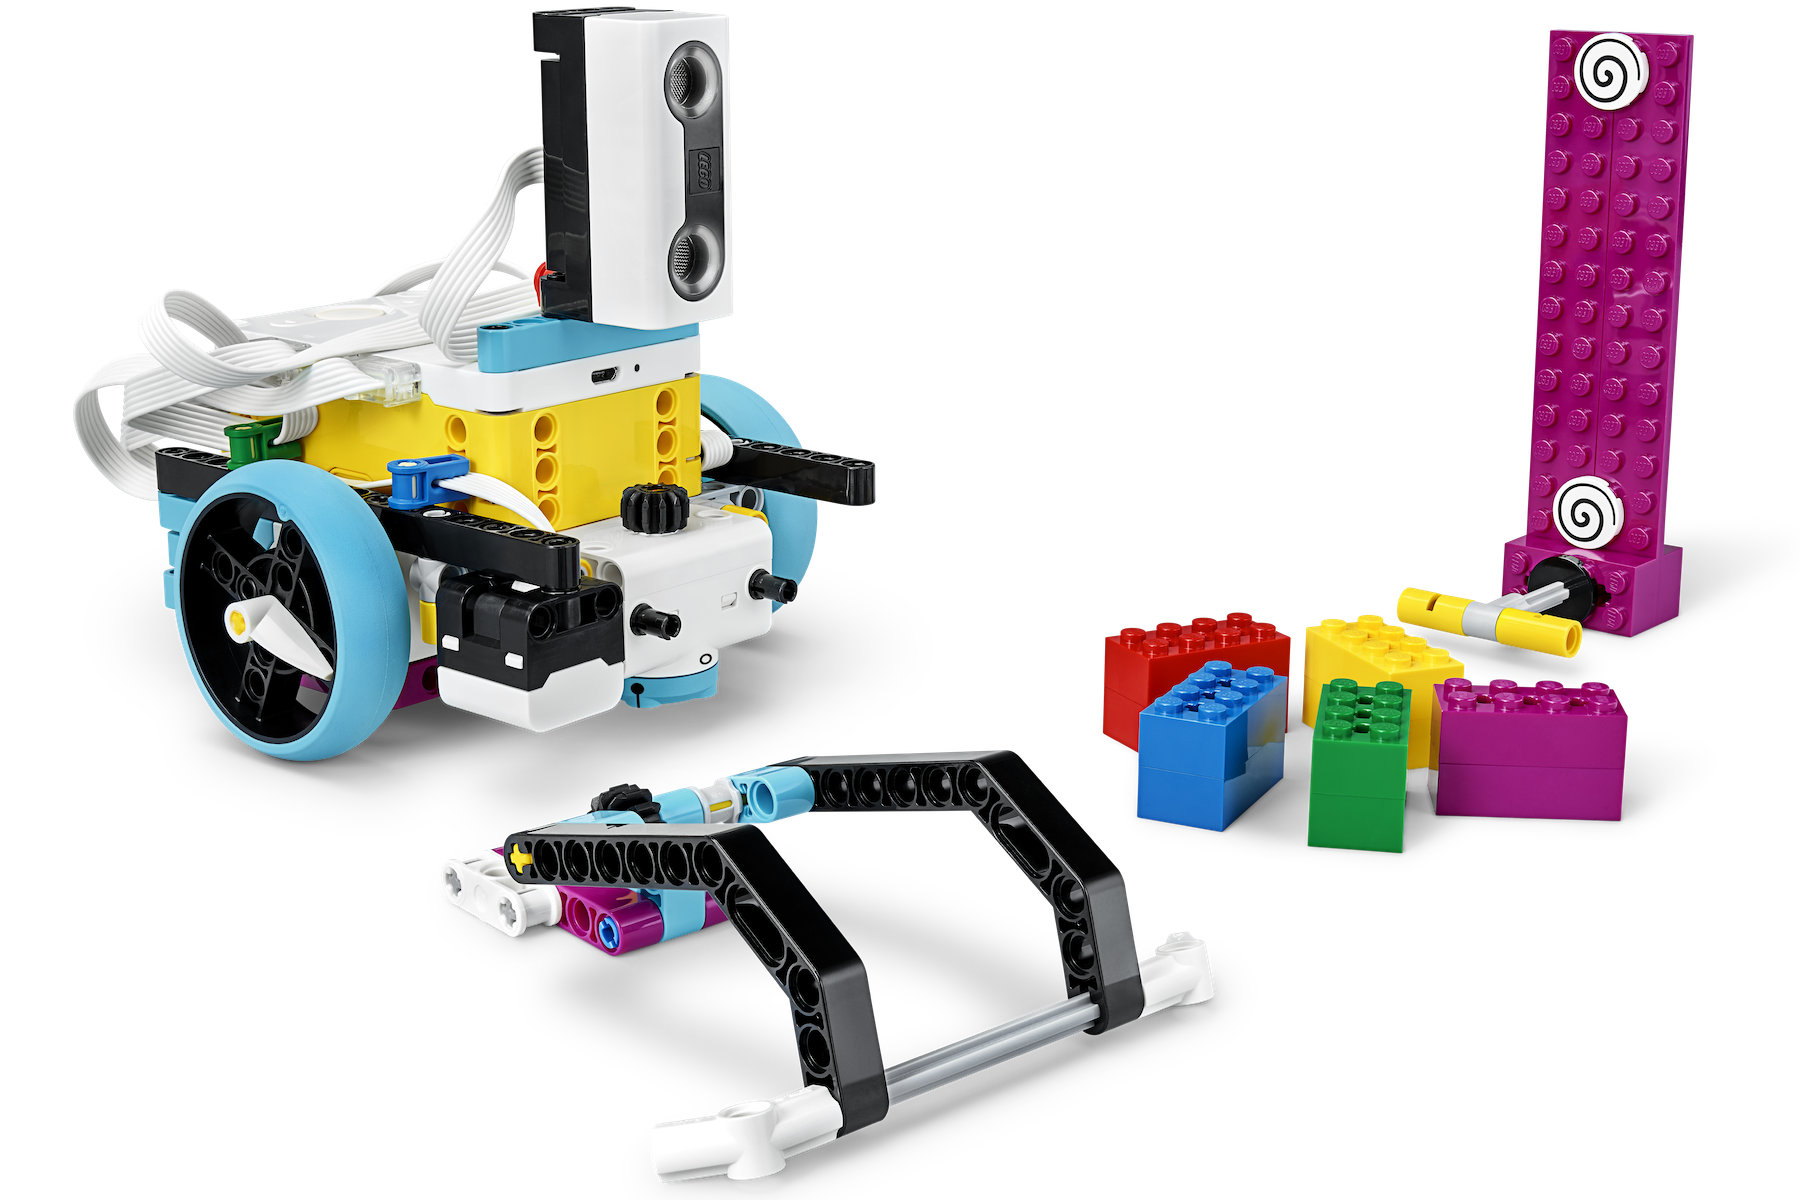 45678 LEGO Education SPIKE Prime - LEGO Mindstorms, Model Team and Scale Modeling - Eurobricks Forums